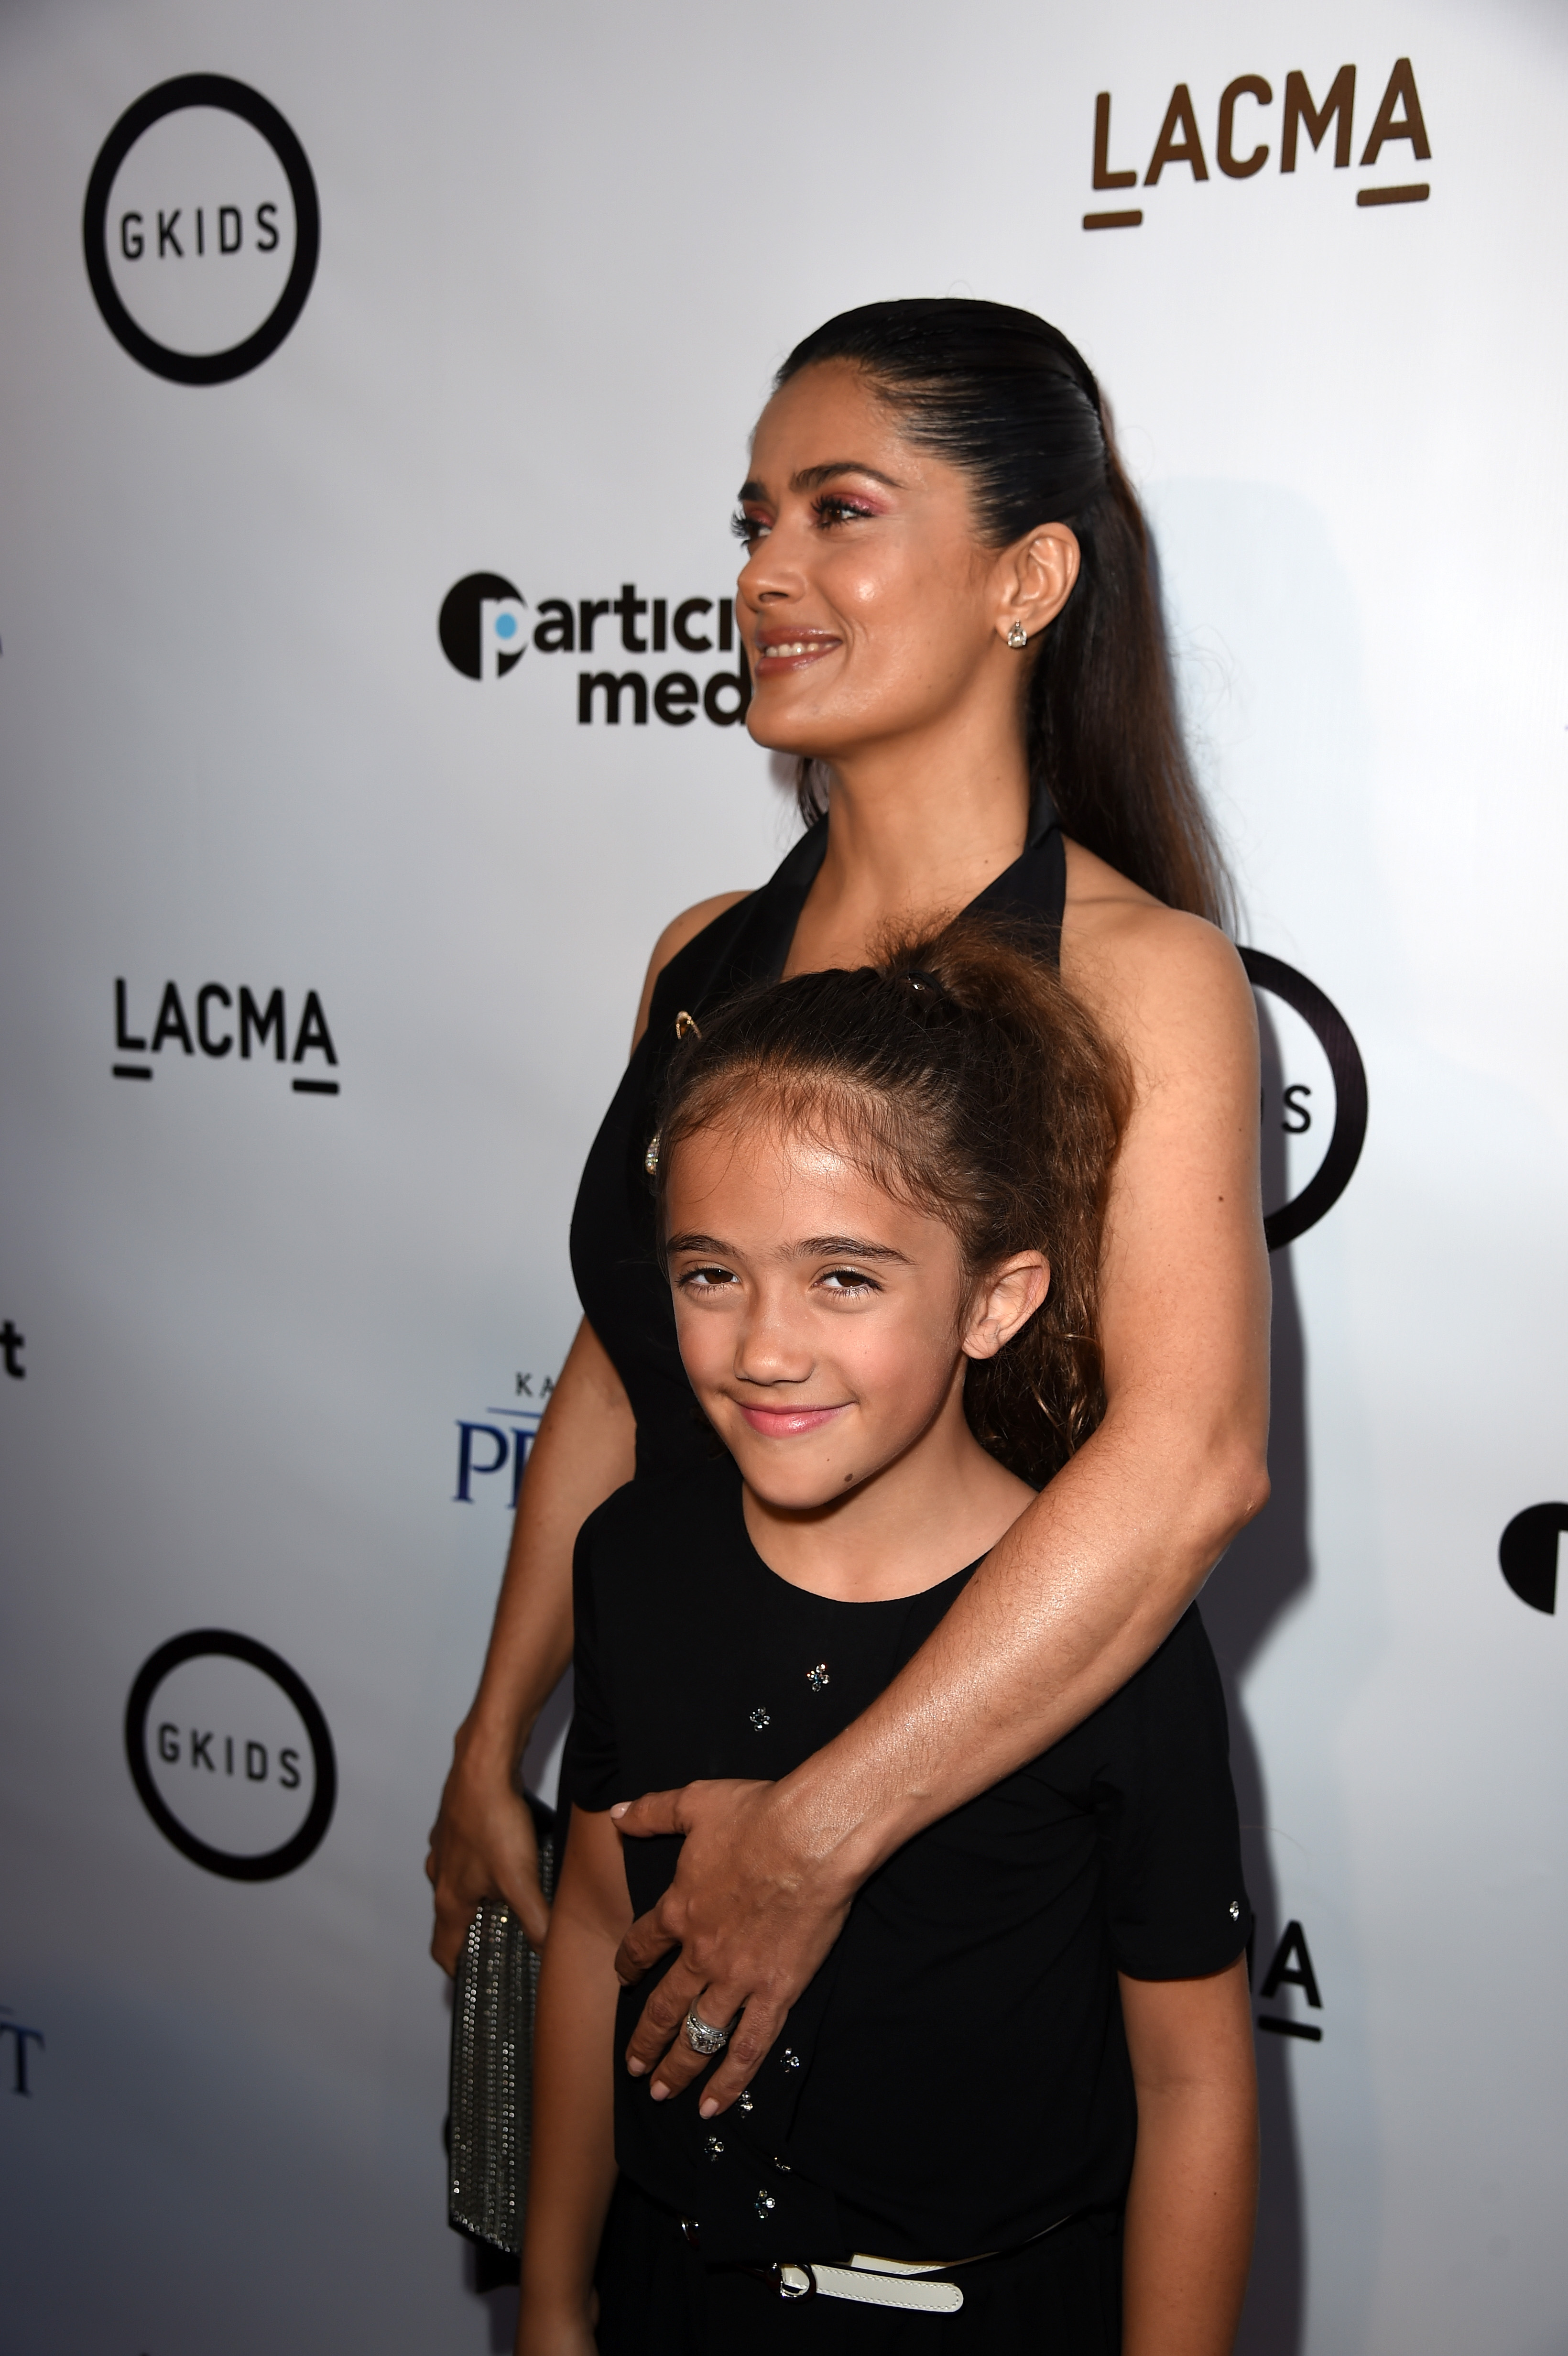 Salma Hayek Pinault y su hija Valentina Paloma Pinault en la proyección de "Kahlil Gibran's the Prophet" de GKIDS en el Bing Theatre del LACMA, el 29 de julio de 2015 en Los Ángeles, California. | Foto: Getty Images